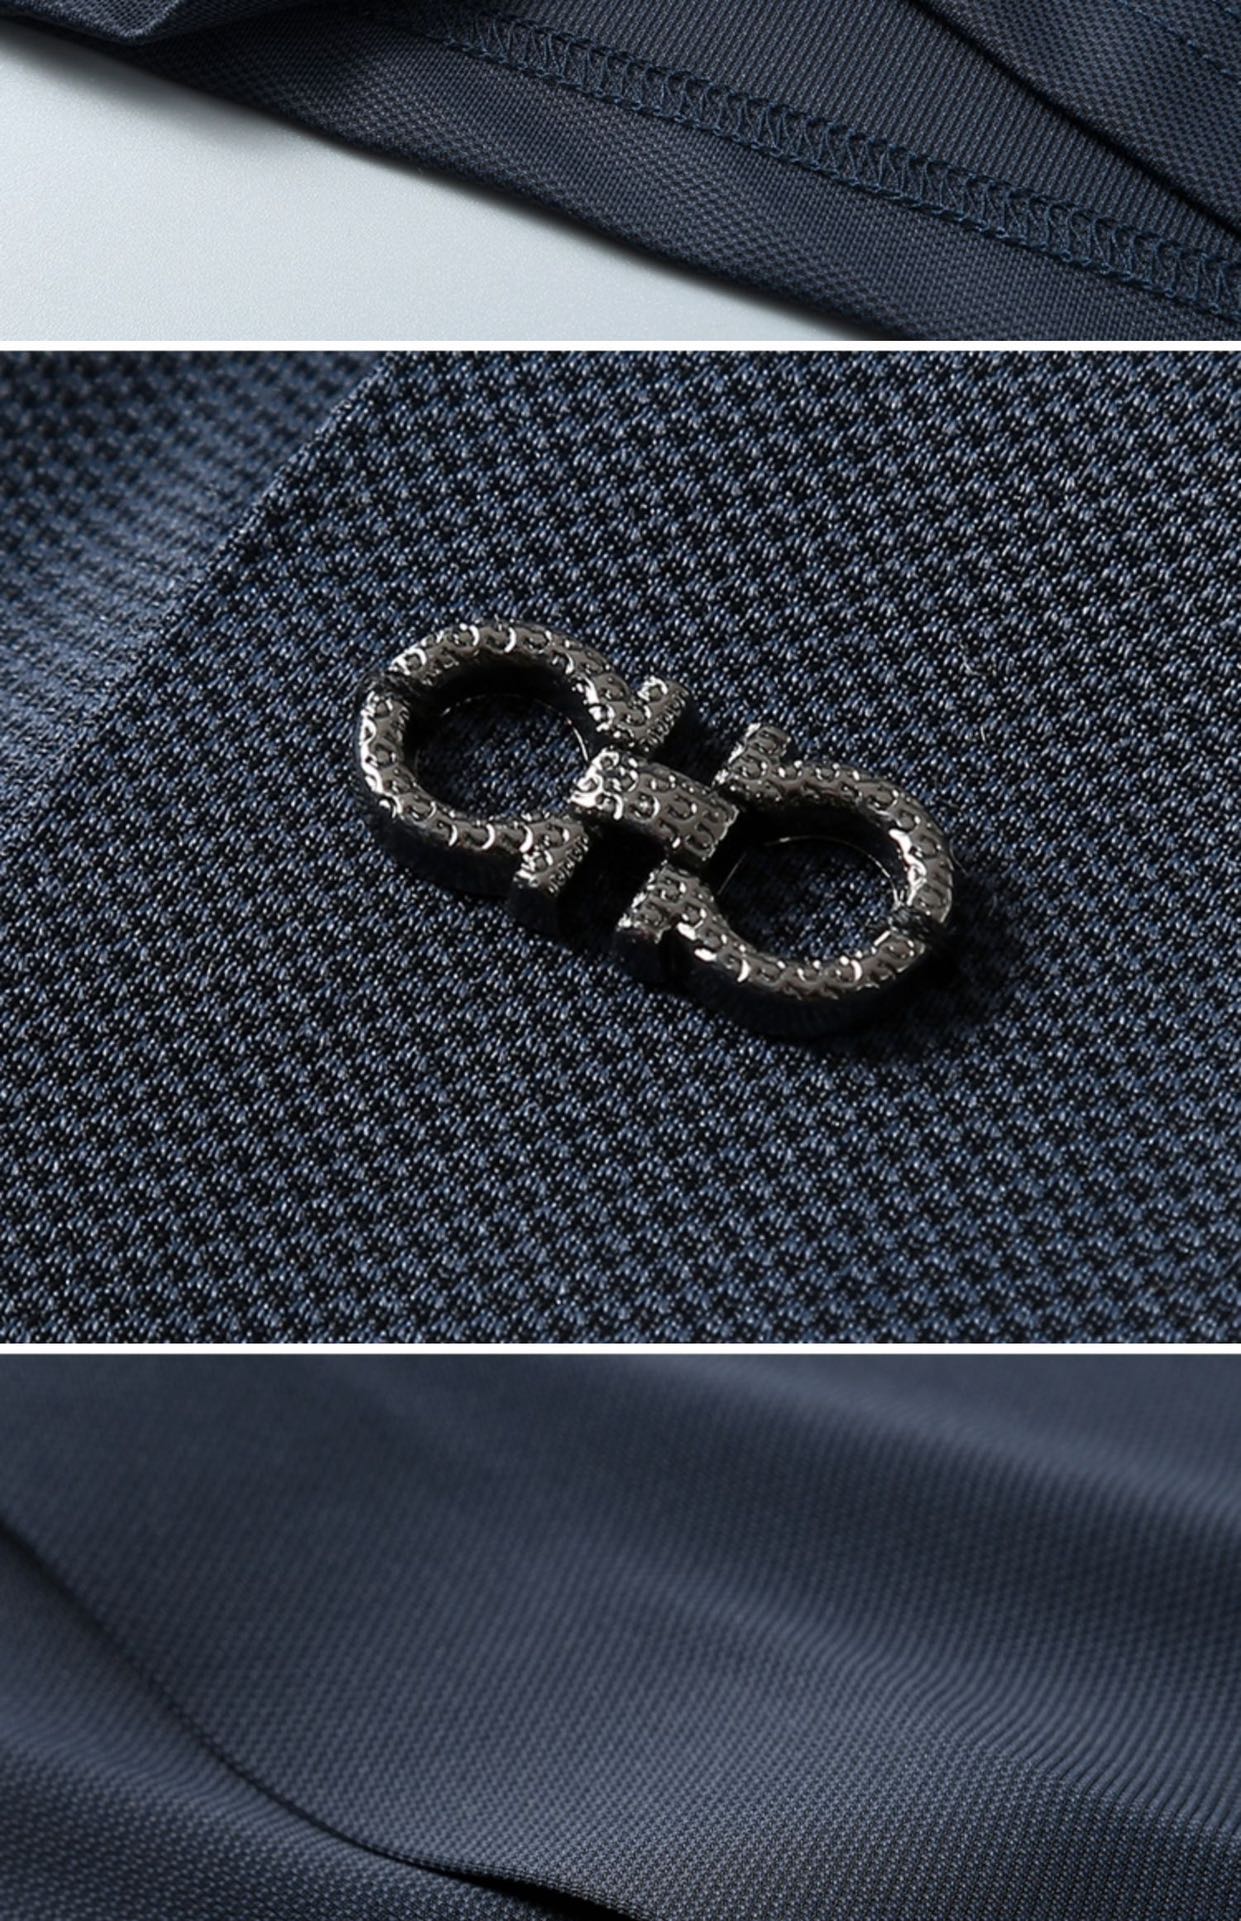 菲拉格慕时尚简约短袖T恤简洁细腻的设计和高质细节而闻名裁剪完美后标最新英国吊点线技术更加完美用料一丝不苟